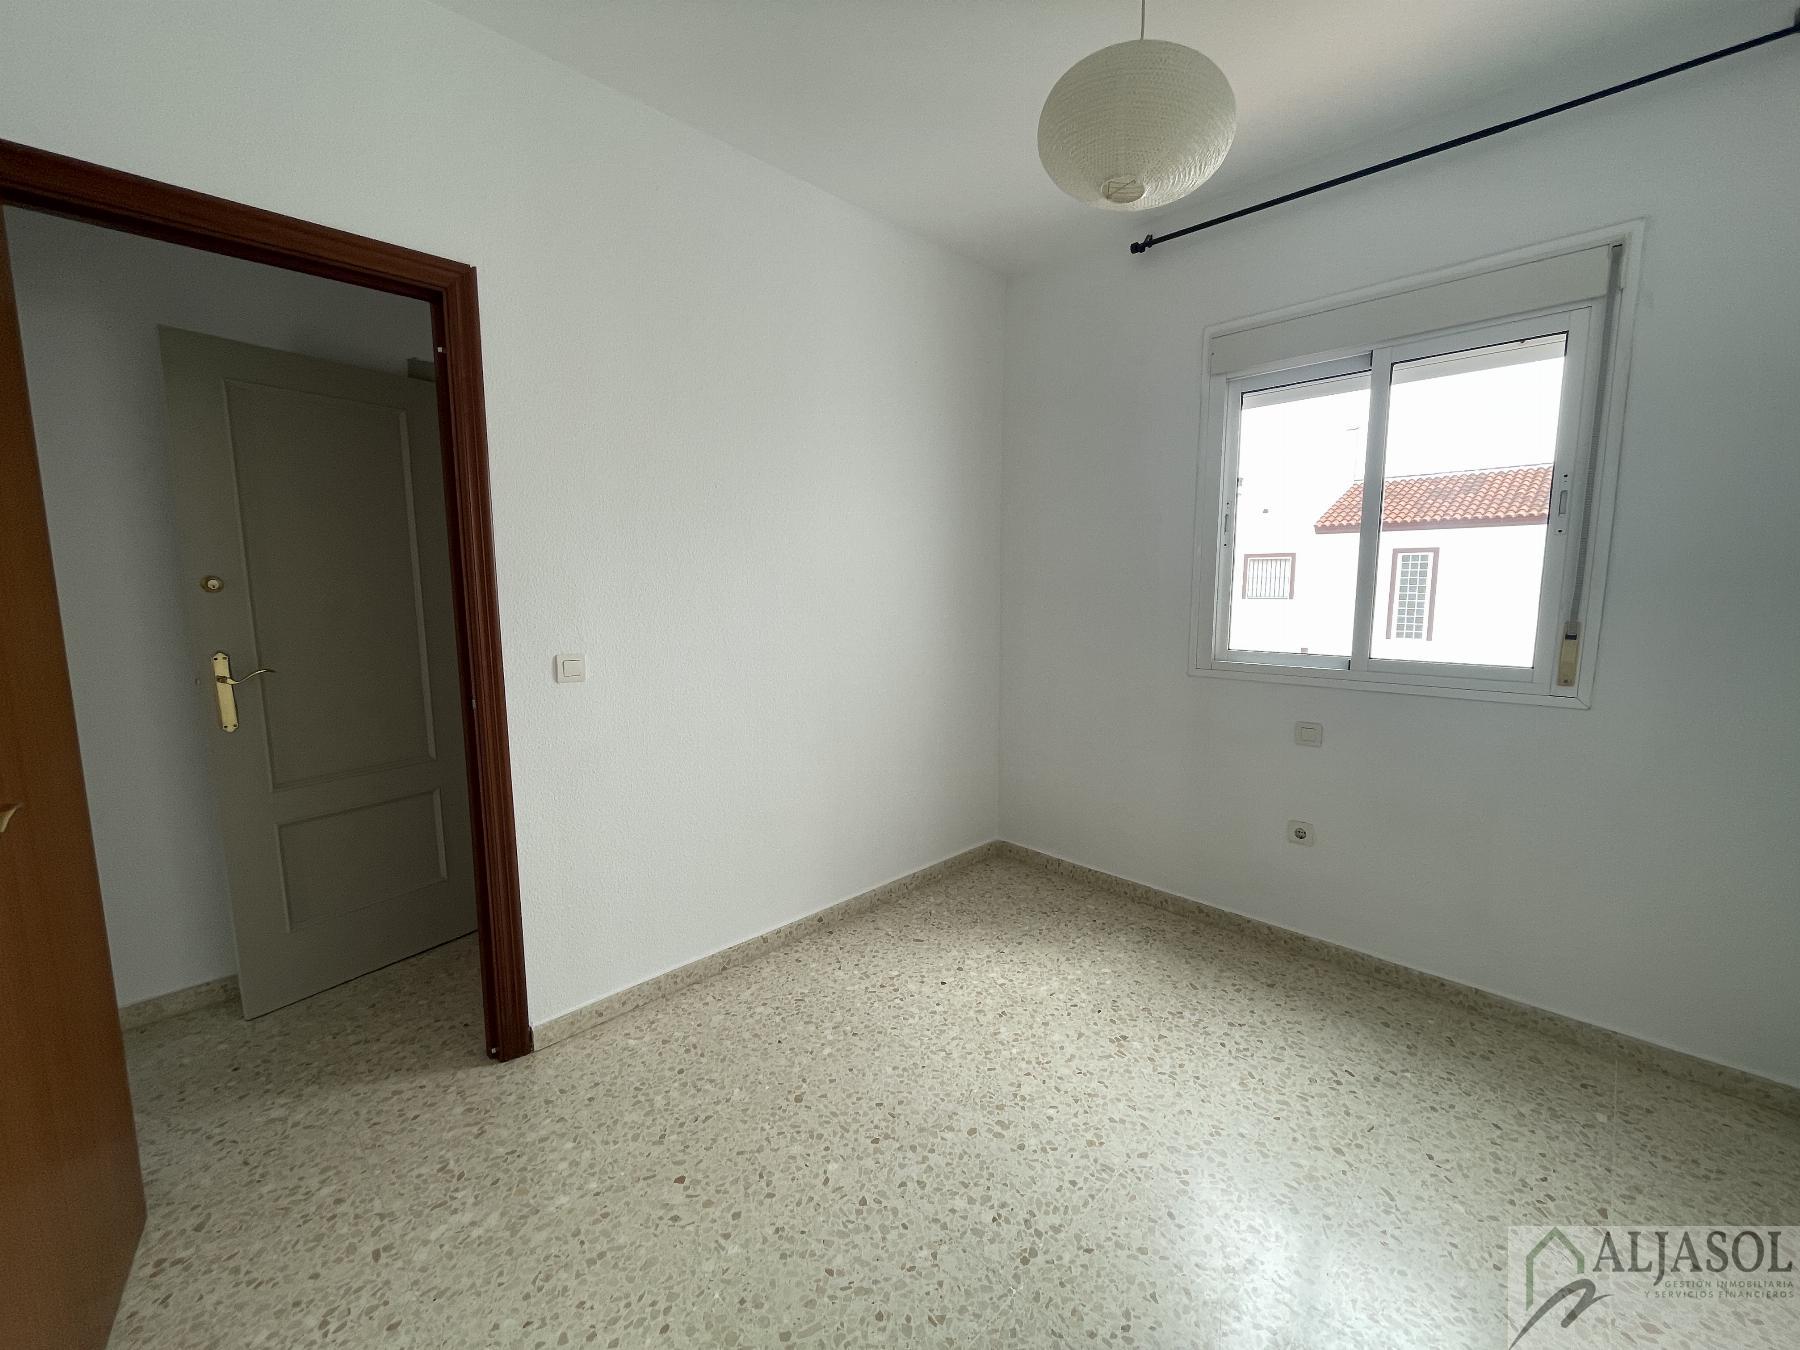 For rent of house in Bollullos de la Mitación